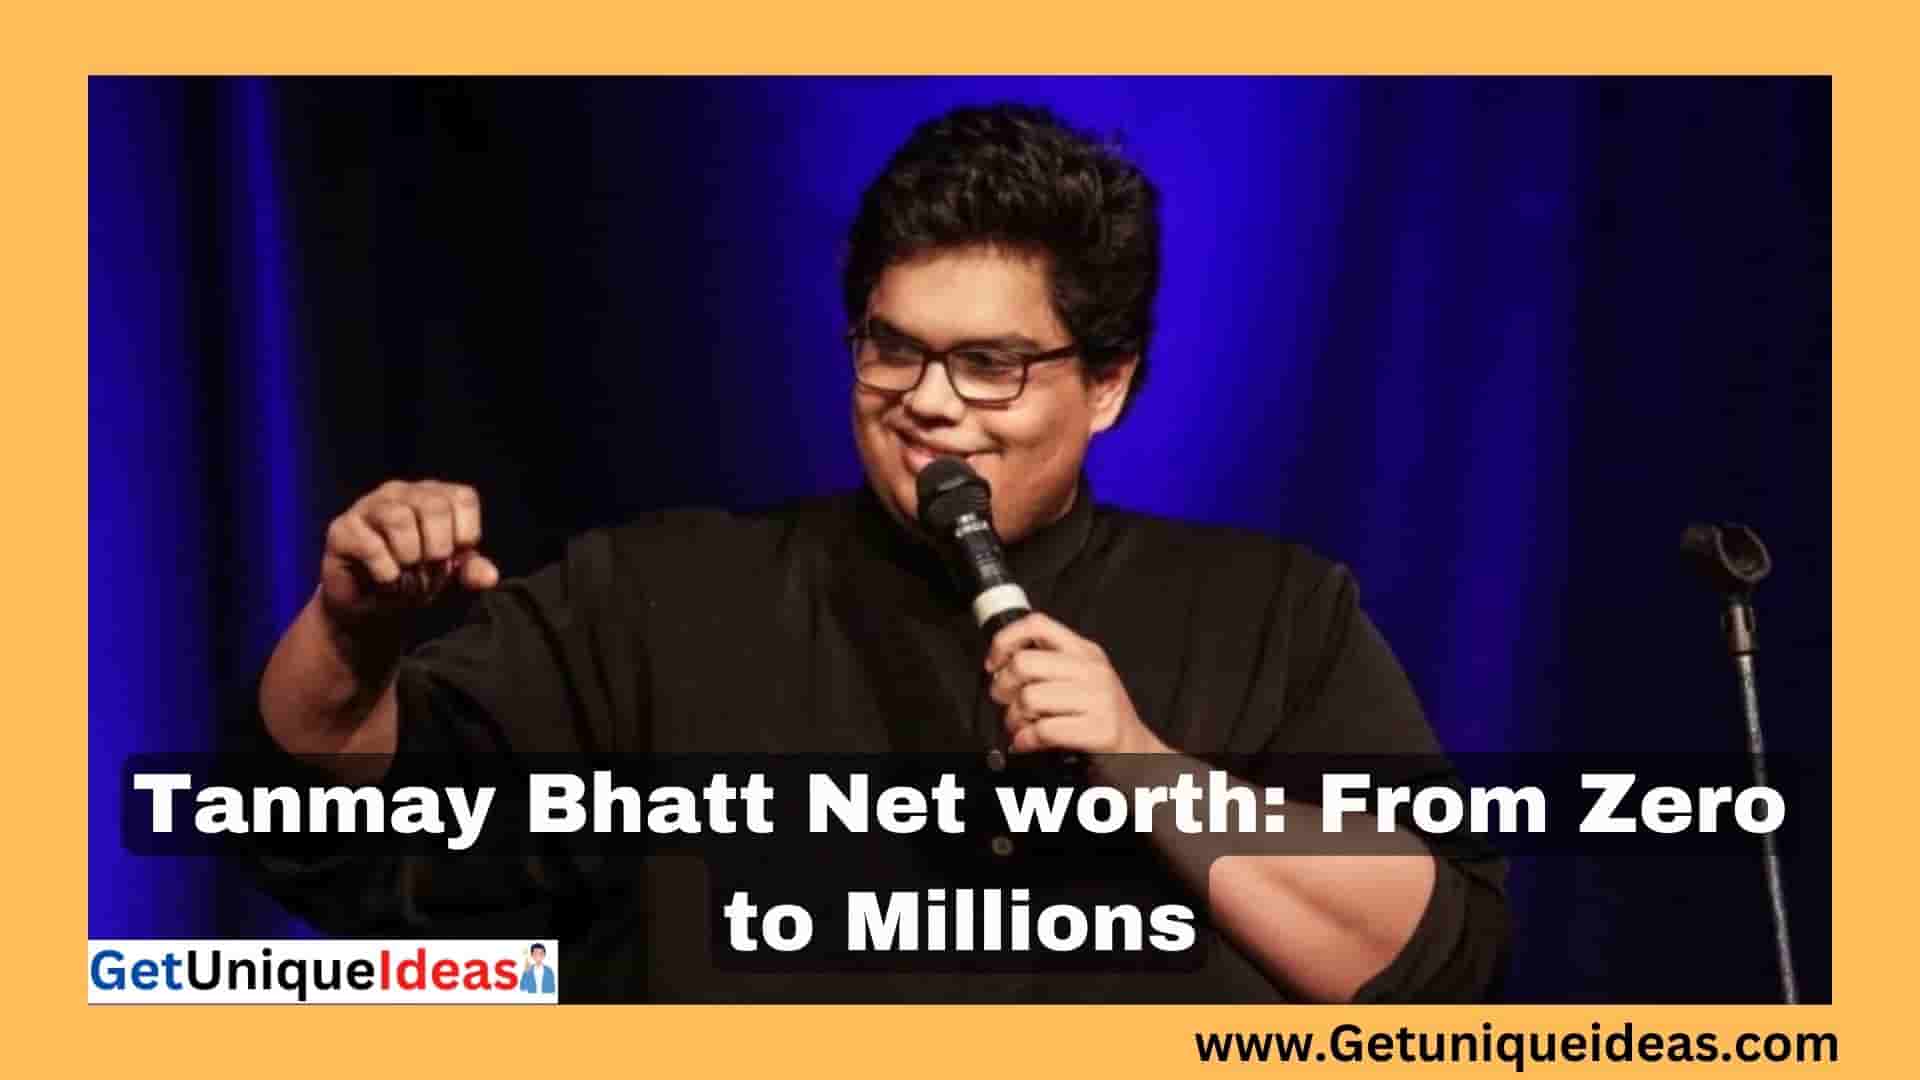 Tanmay Bhatt Net worth: From Zero to Millions